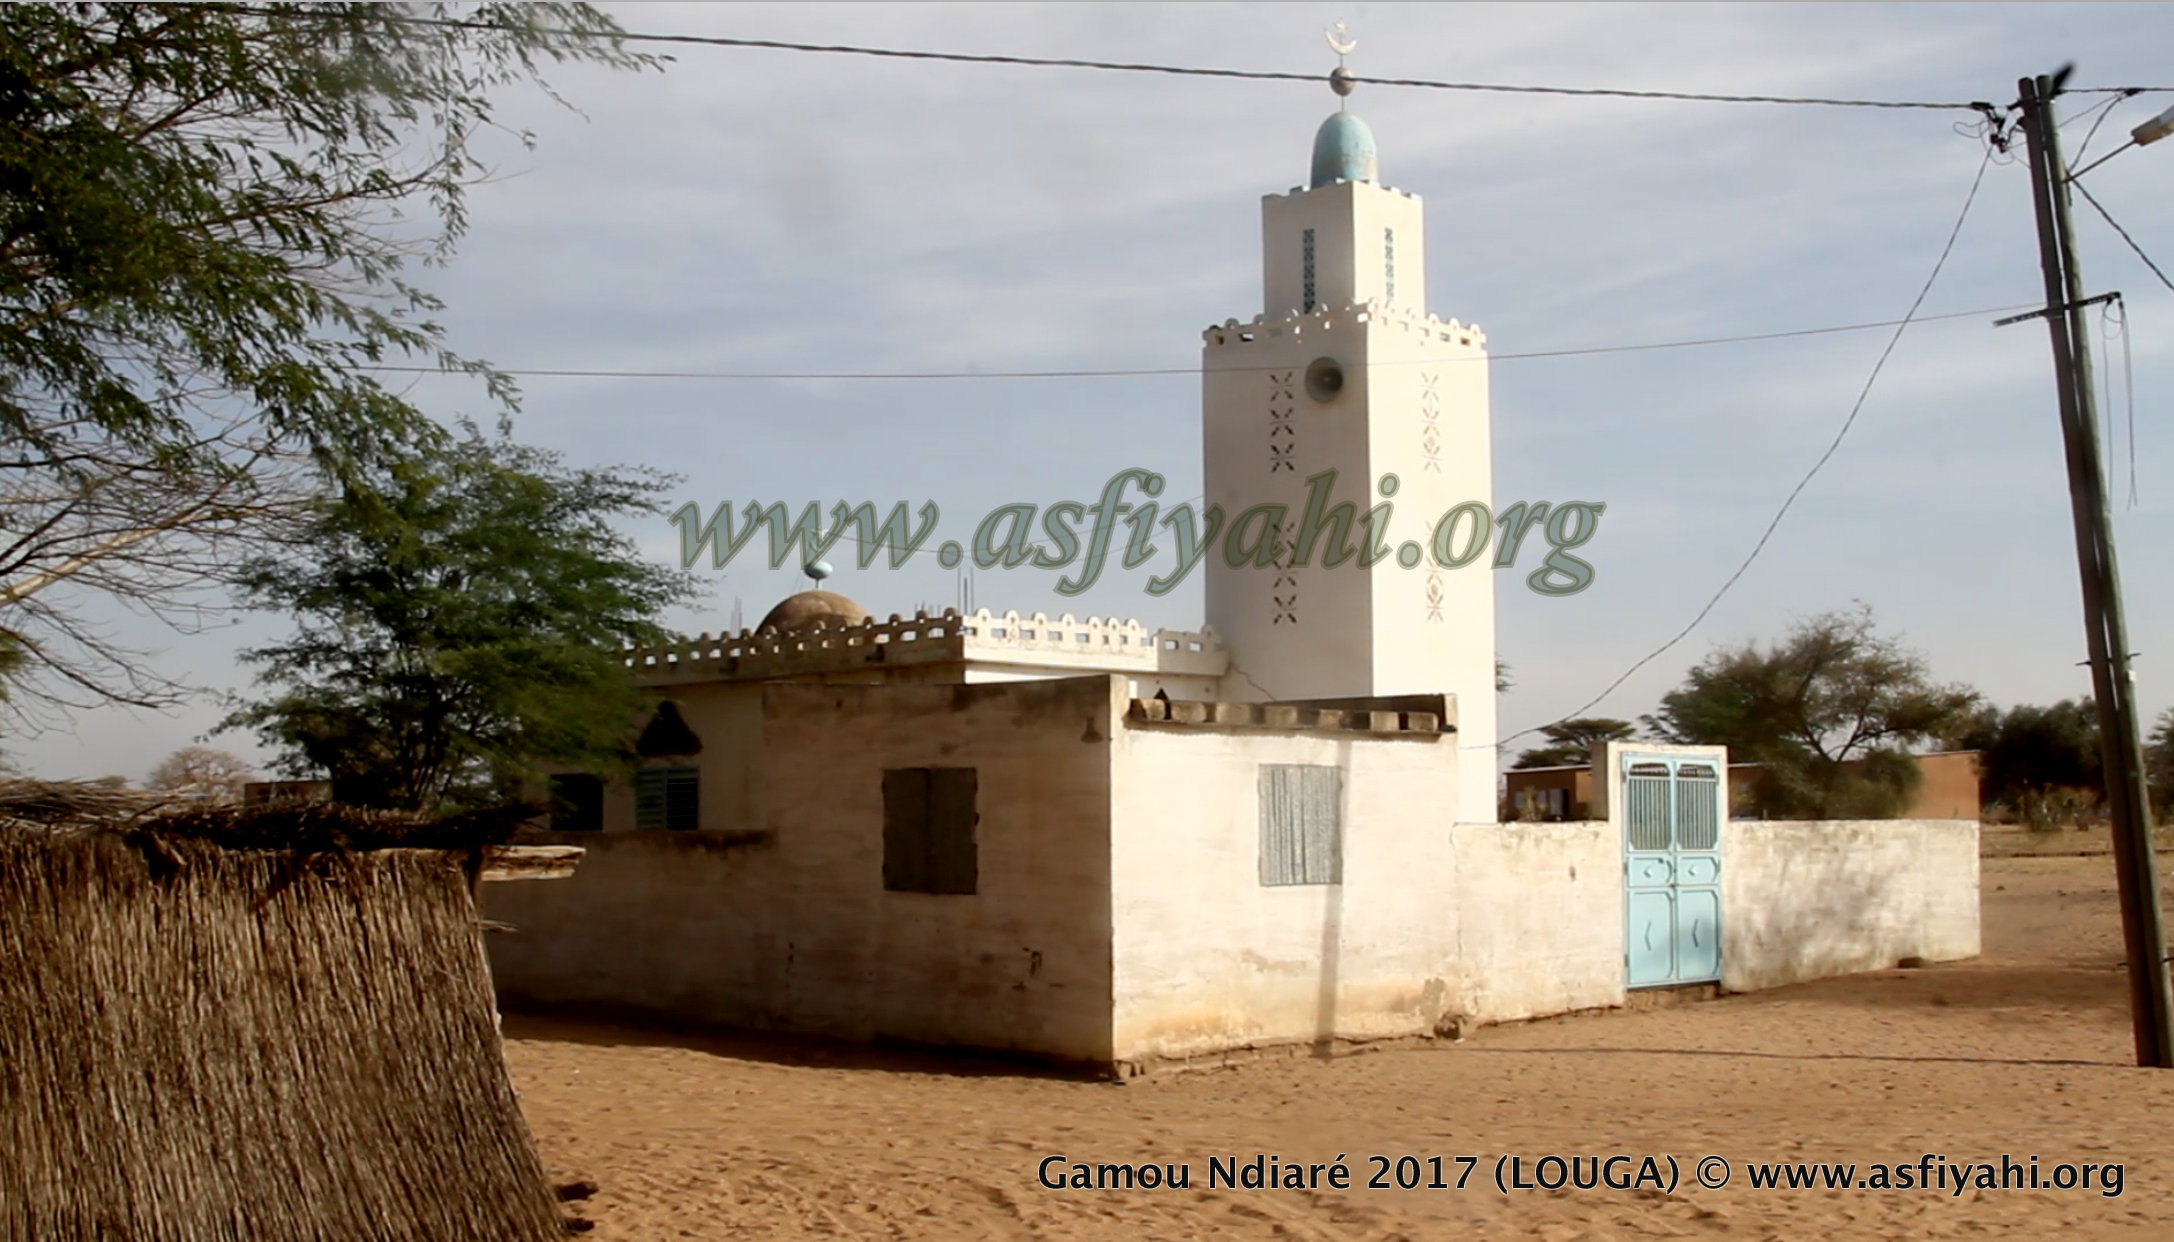 PHOTOS - NDIARÉ (LOUGA) - Les Images du Gamou de Ndiaré Ouakhy, Wakeur Serigne El Hadj Maguèye Ndiaré (rta), célébré ce Mercredi 18 janvier 2017 